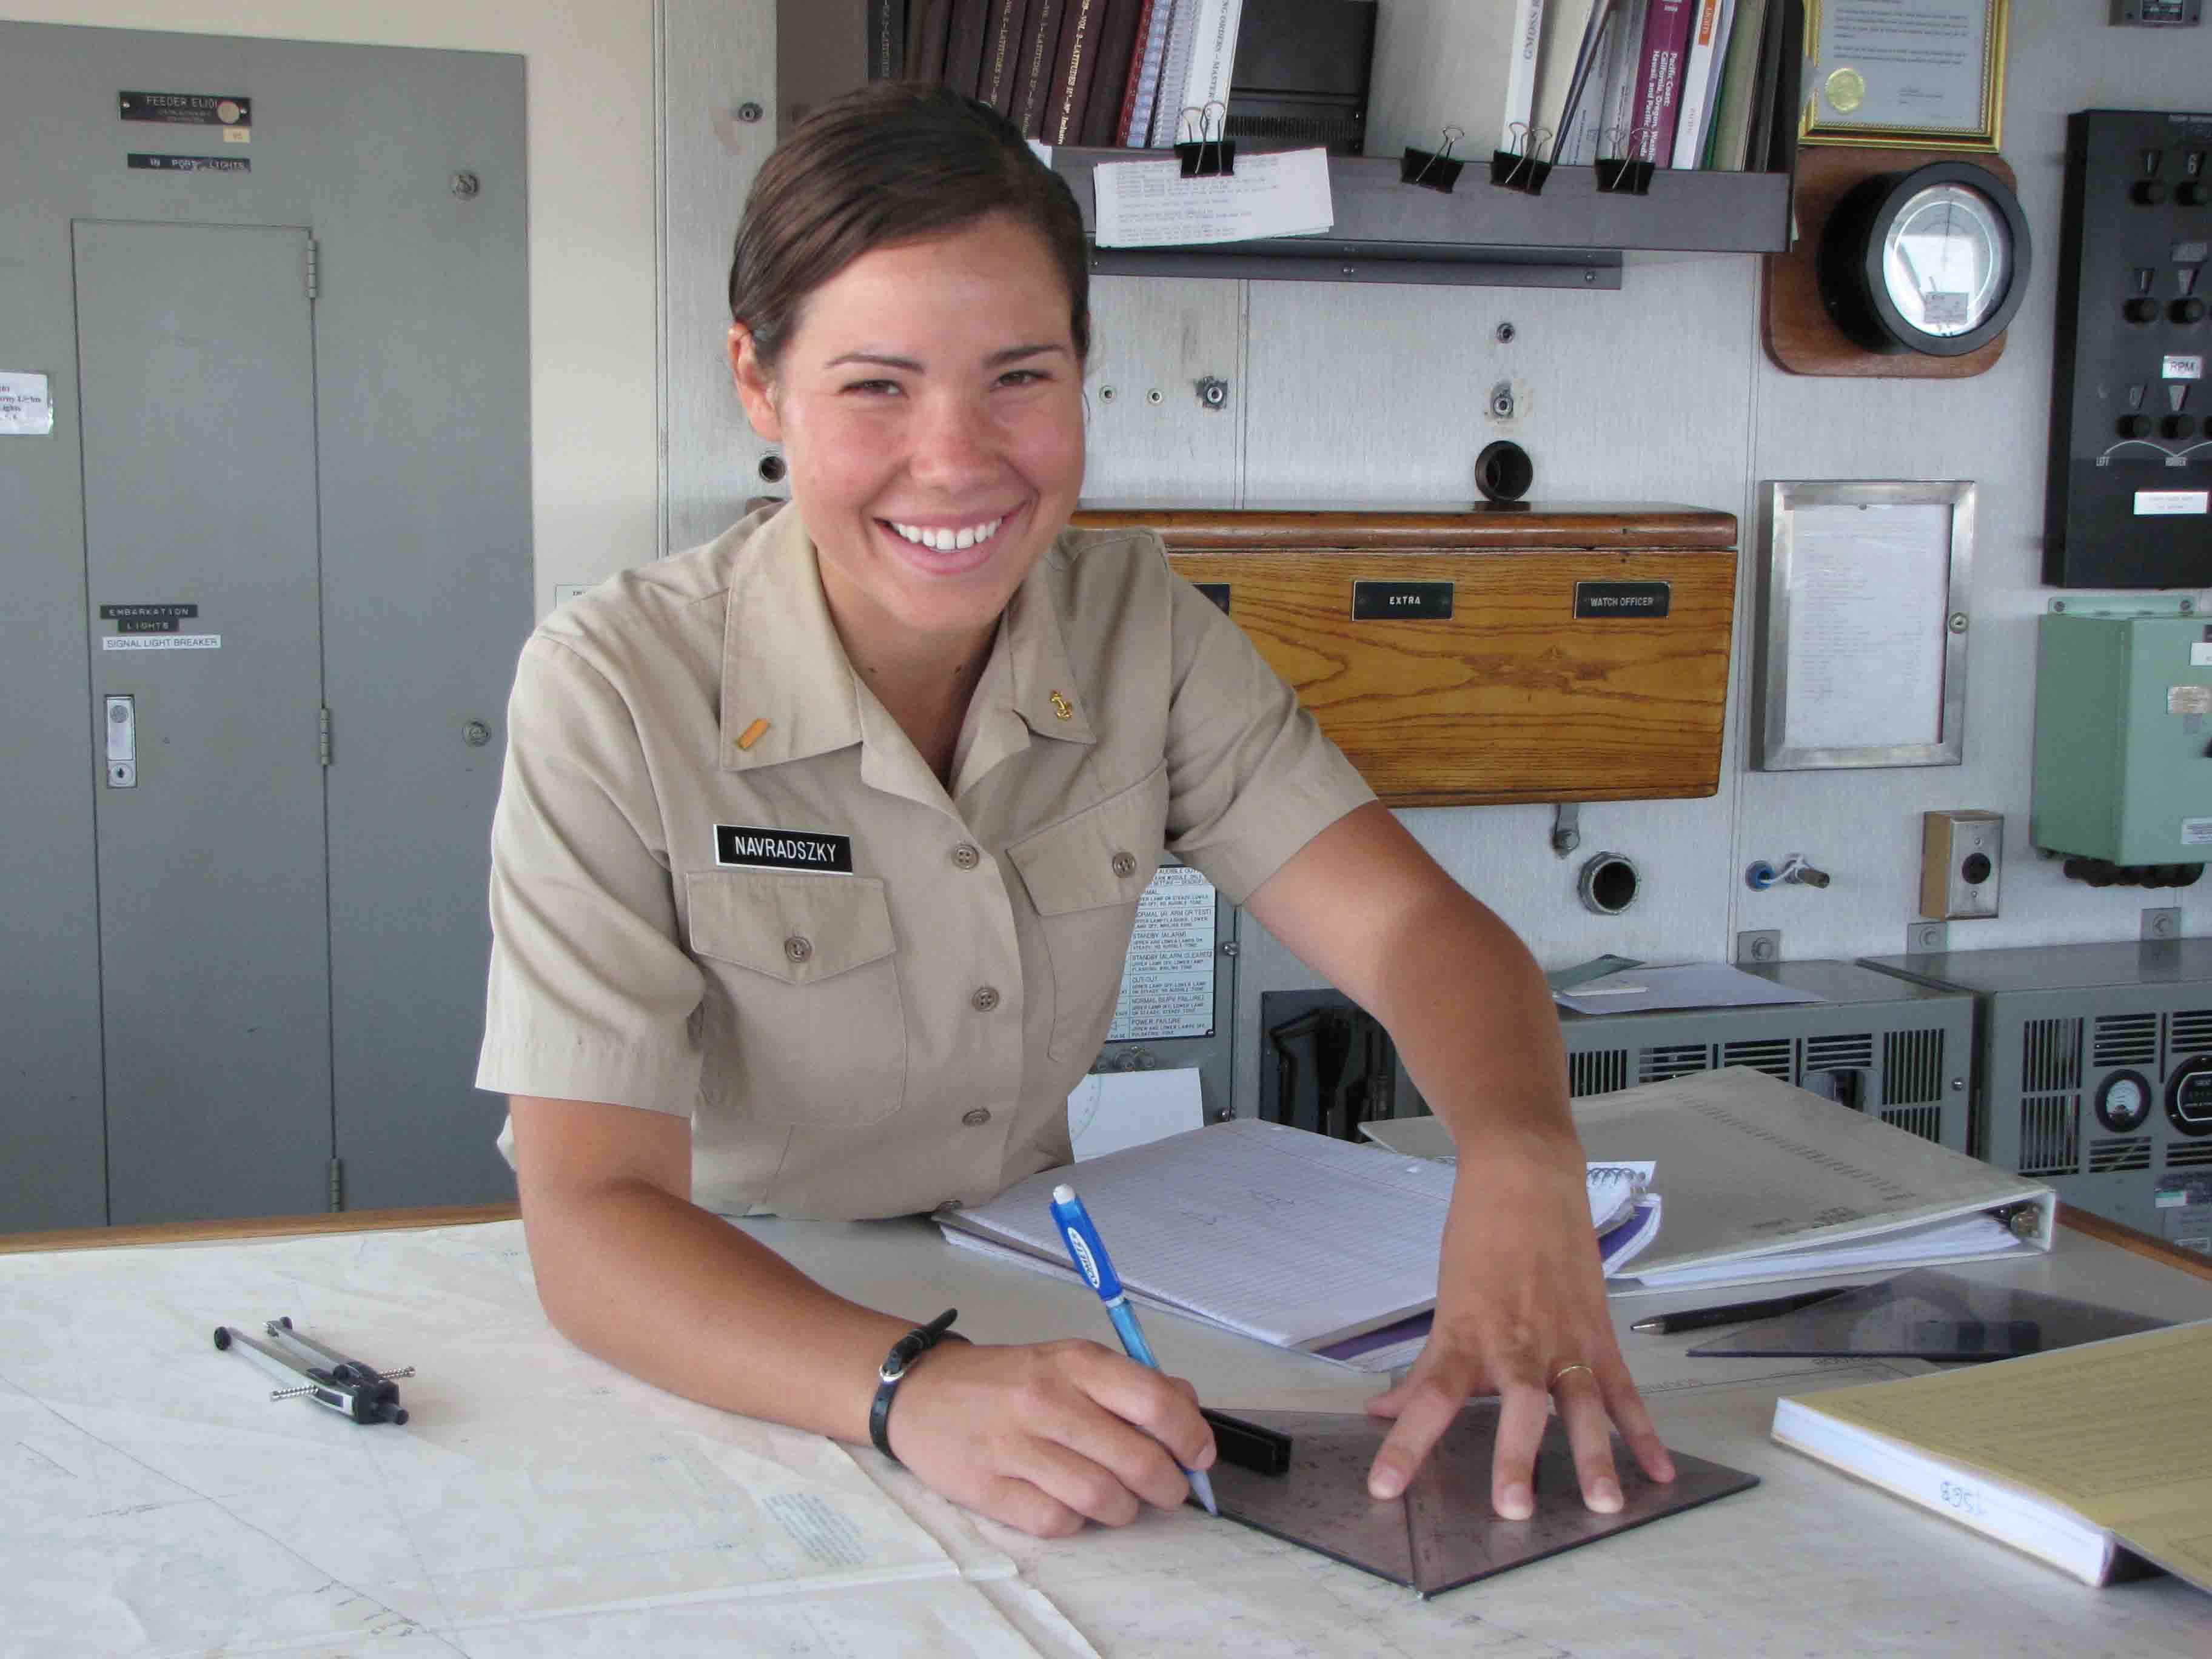 Female cadet smiling